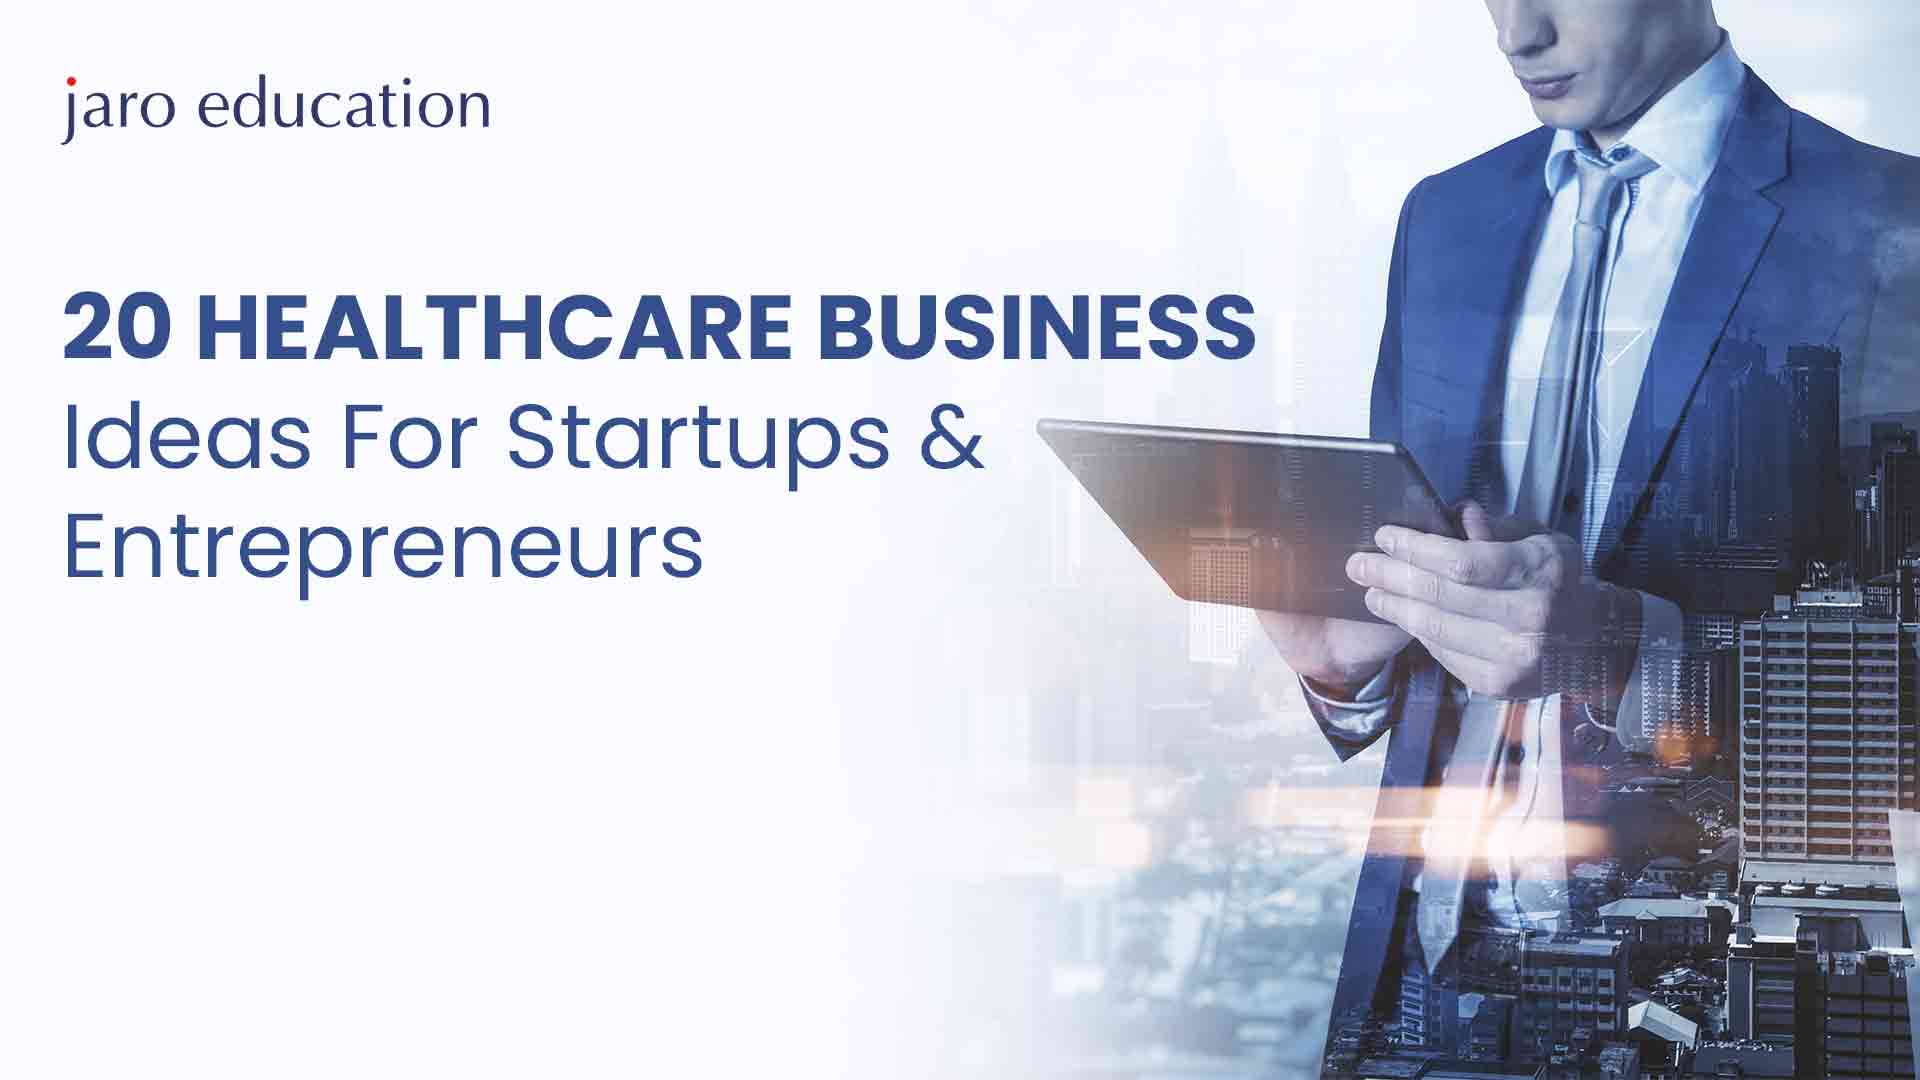 20 Healthcare Business Ideas For Startups & Entrepreneurs